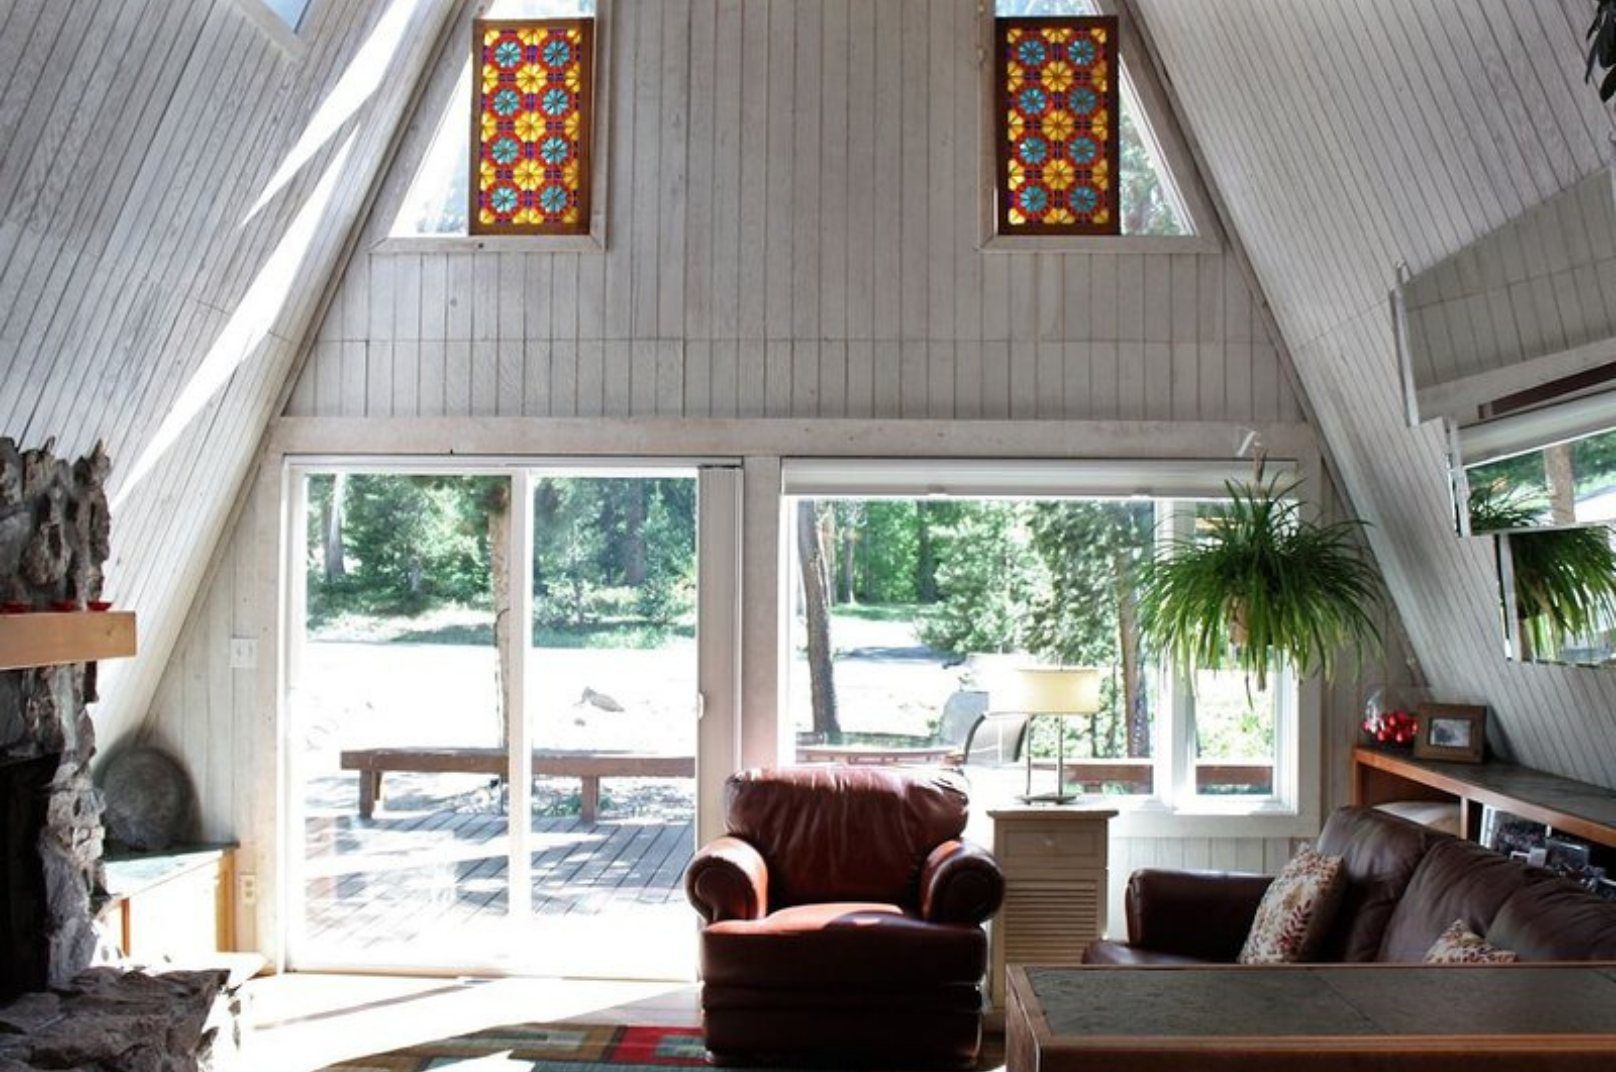 the best Airbnbs near Breckenridge